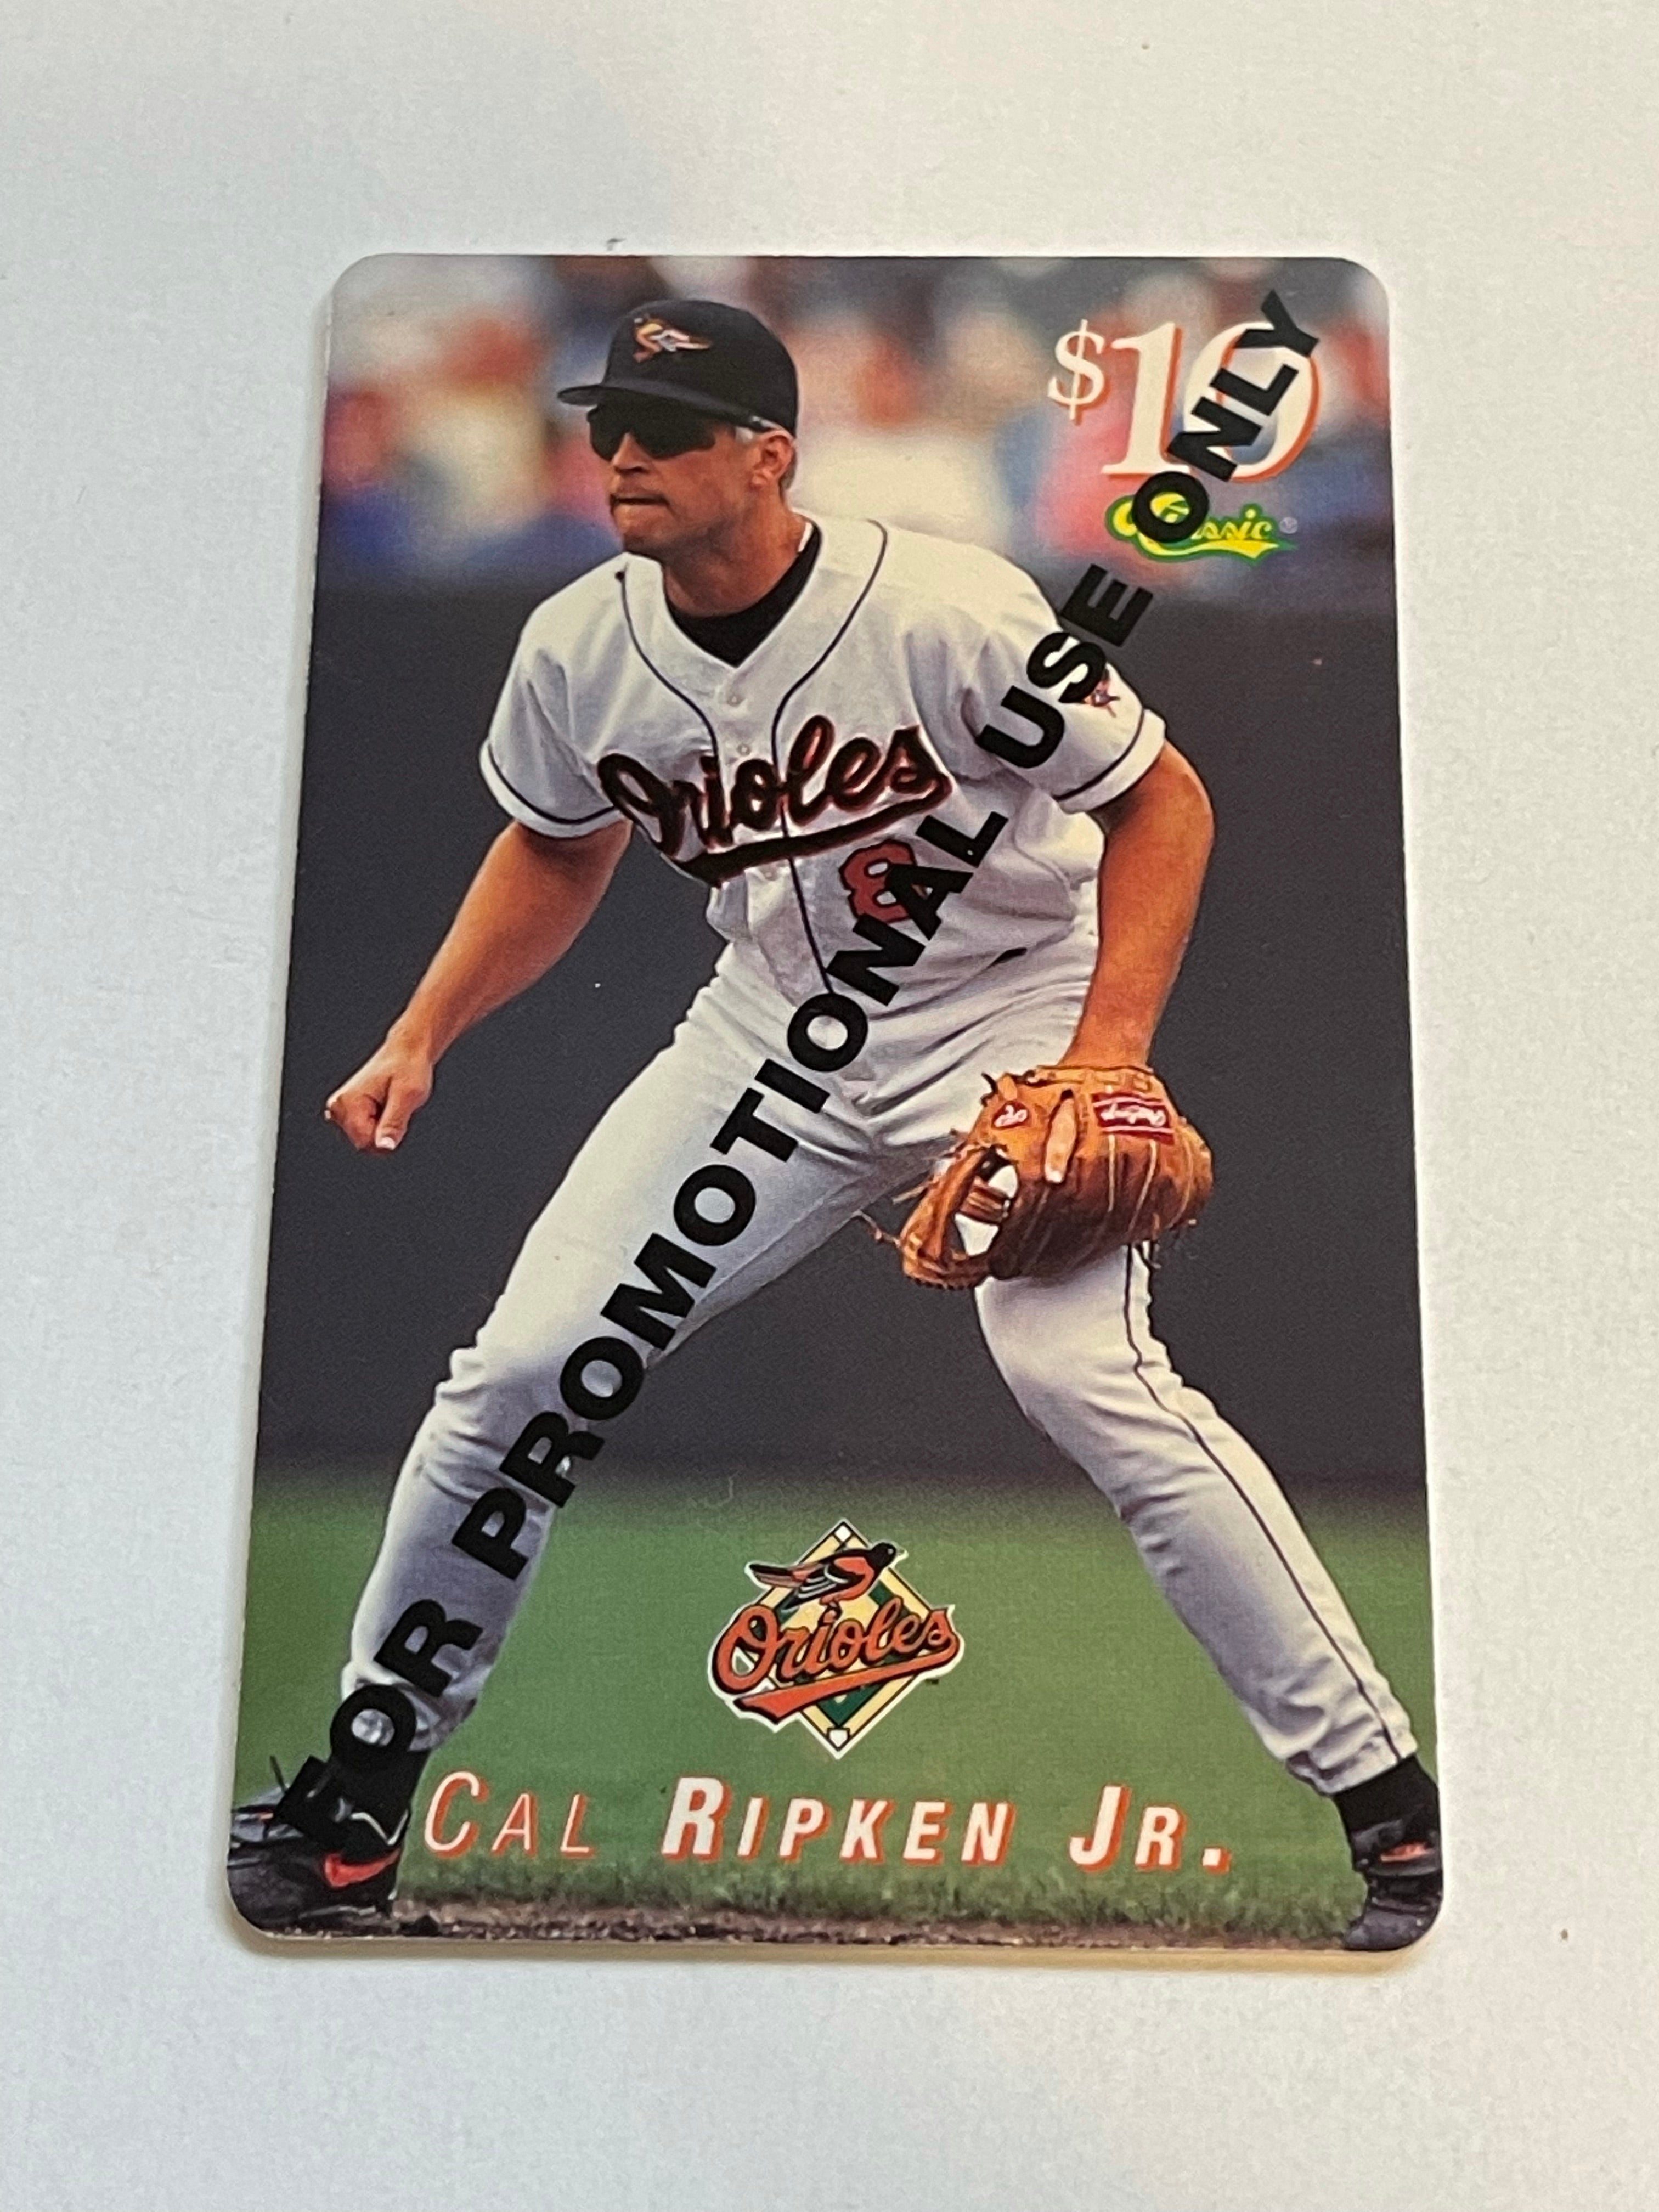 Cal Ripken Jr rare promo phonecard 1990s